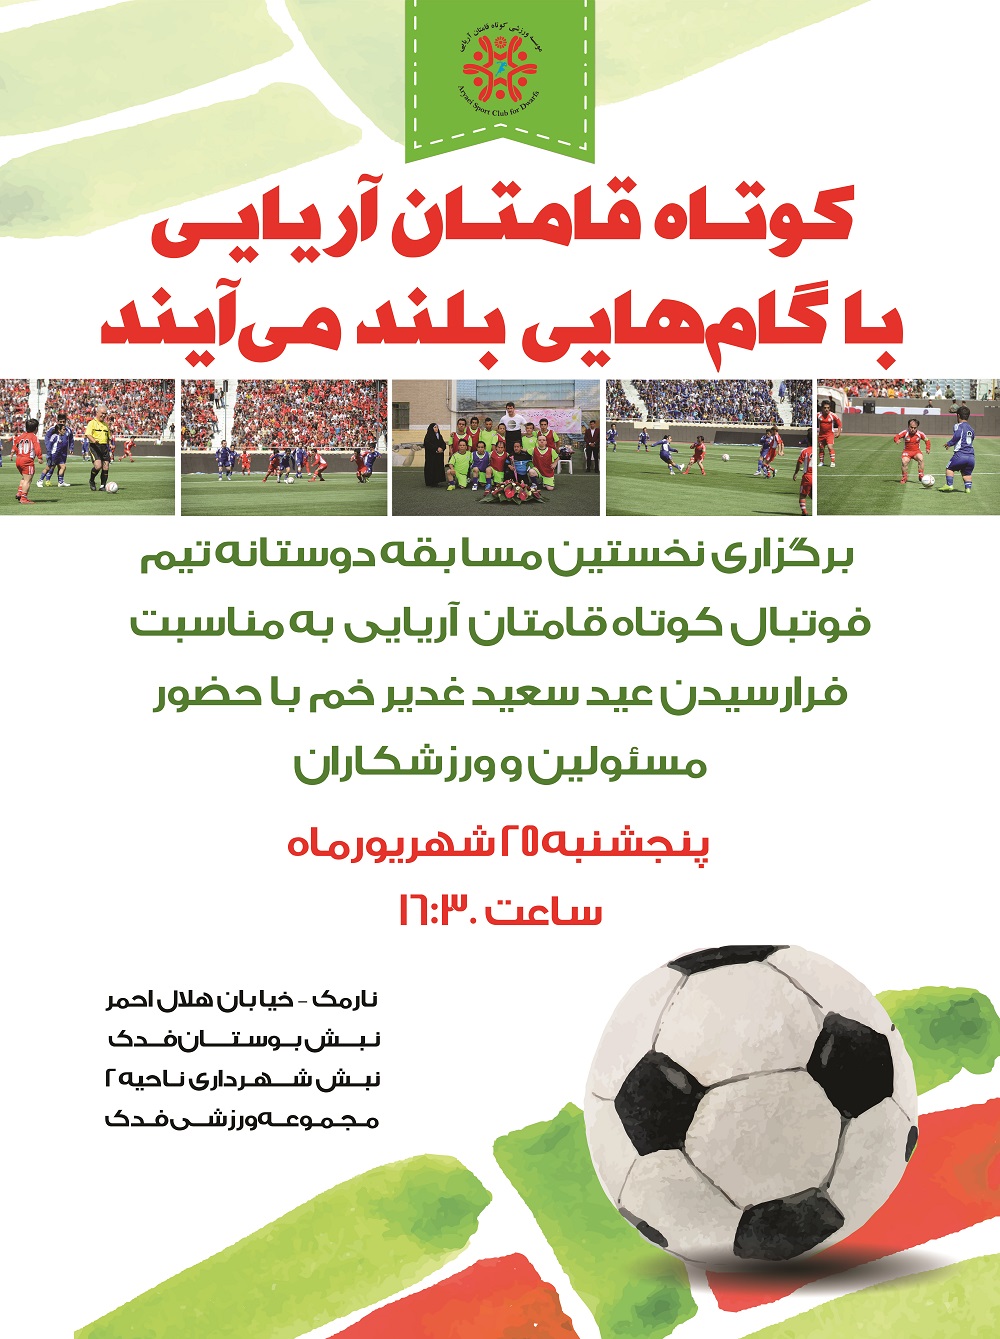 مسابقه ی دوستانه ی تیم فوتبال کوتاه قامتان آریایی با تیم نوجوانان پیروزی 25.6.95 